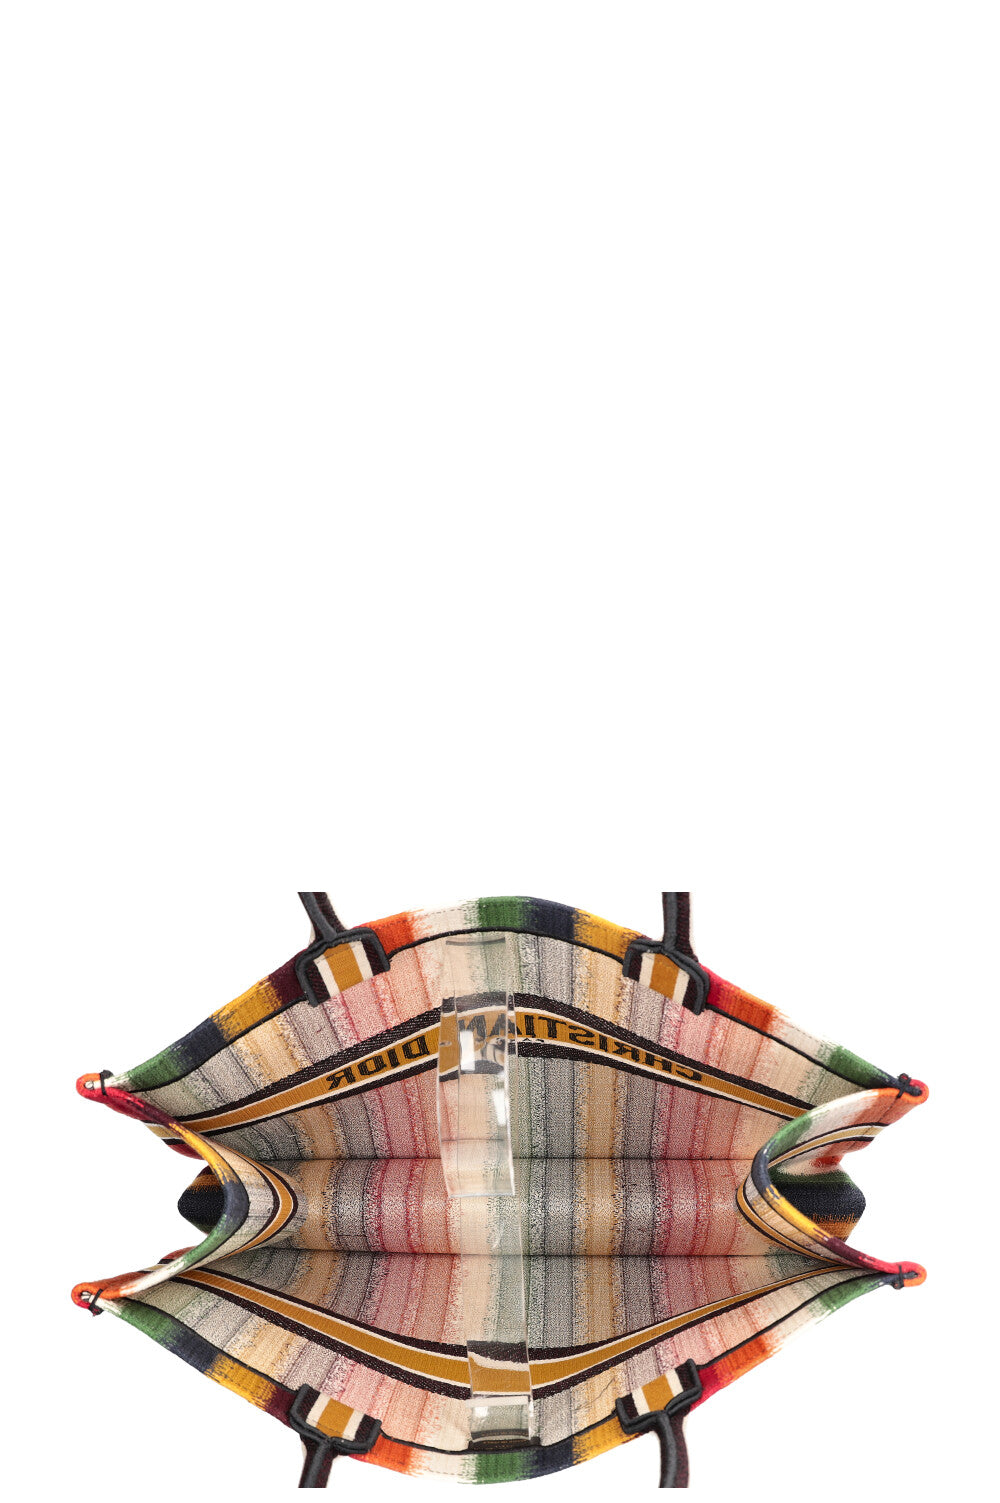 CHRISTIAN DIOR Book Tote Striped Multicolor